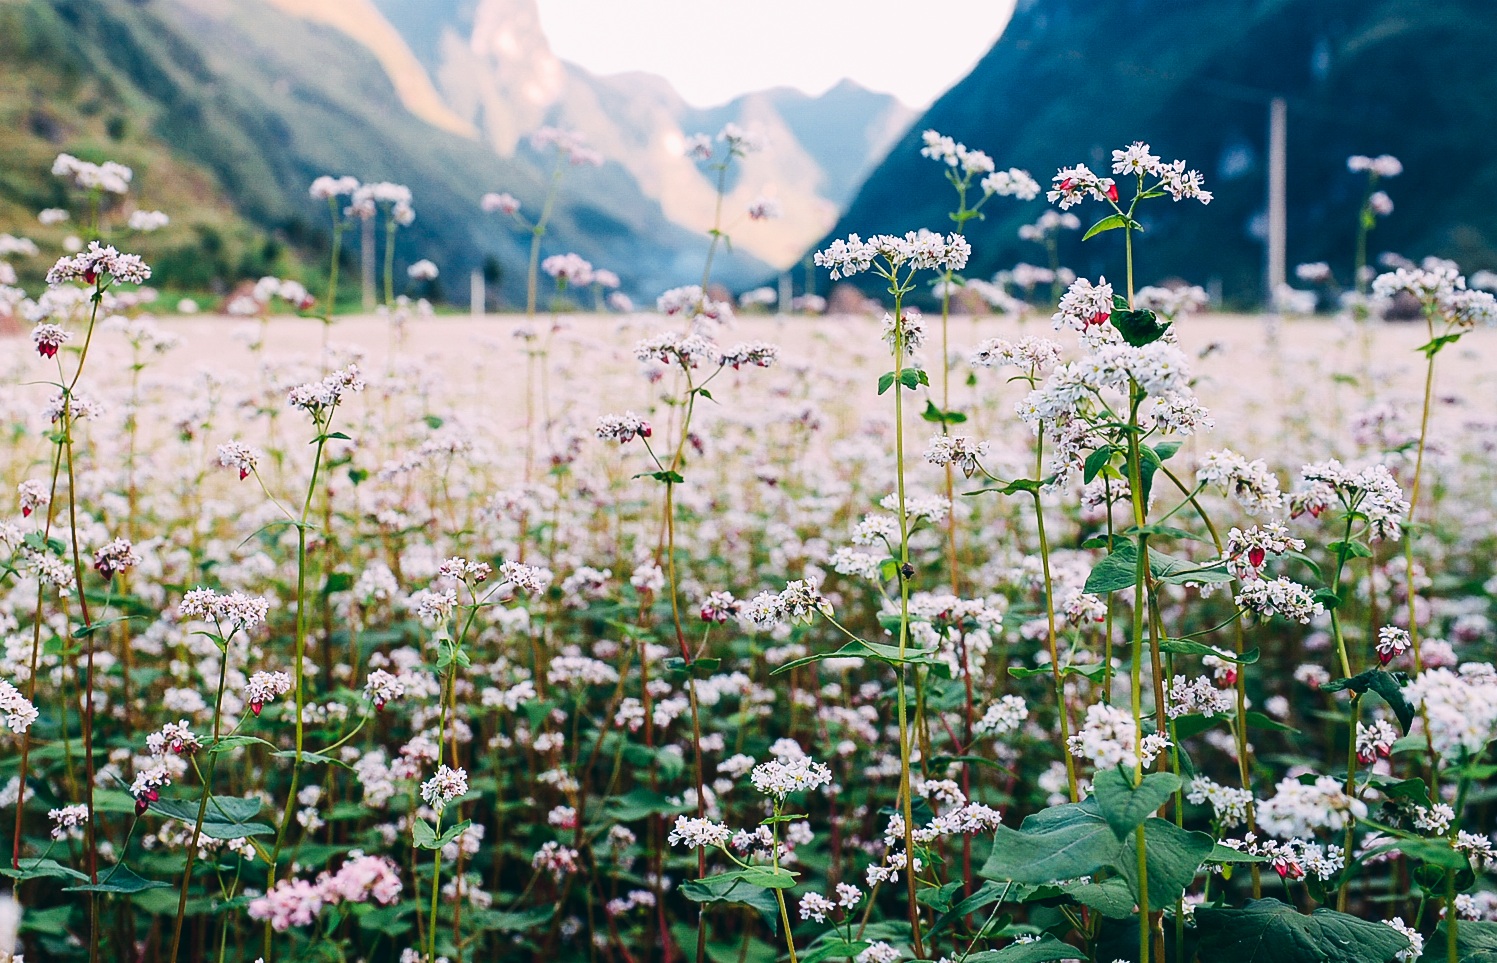 Tổng hợp những hình ảnh đẹp ý nghĩa về hoa tam giác mạch – loài hoa của núi rừng Tây Bắc - [Kích thước hình ảnh: 1497x963 px]